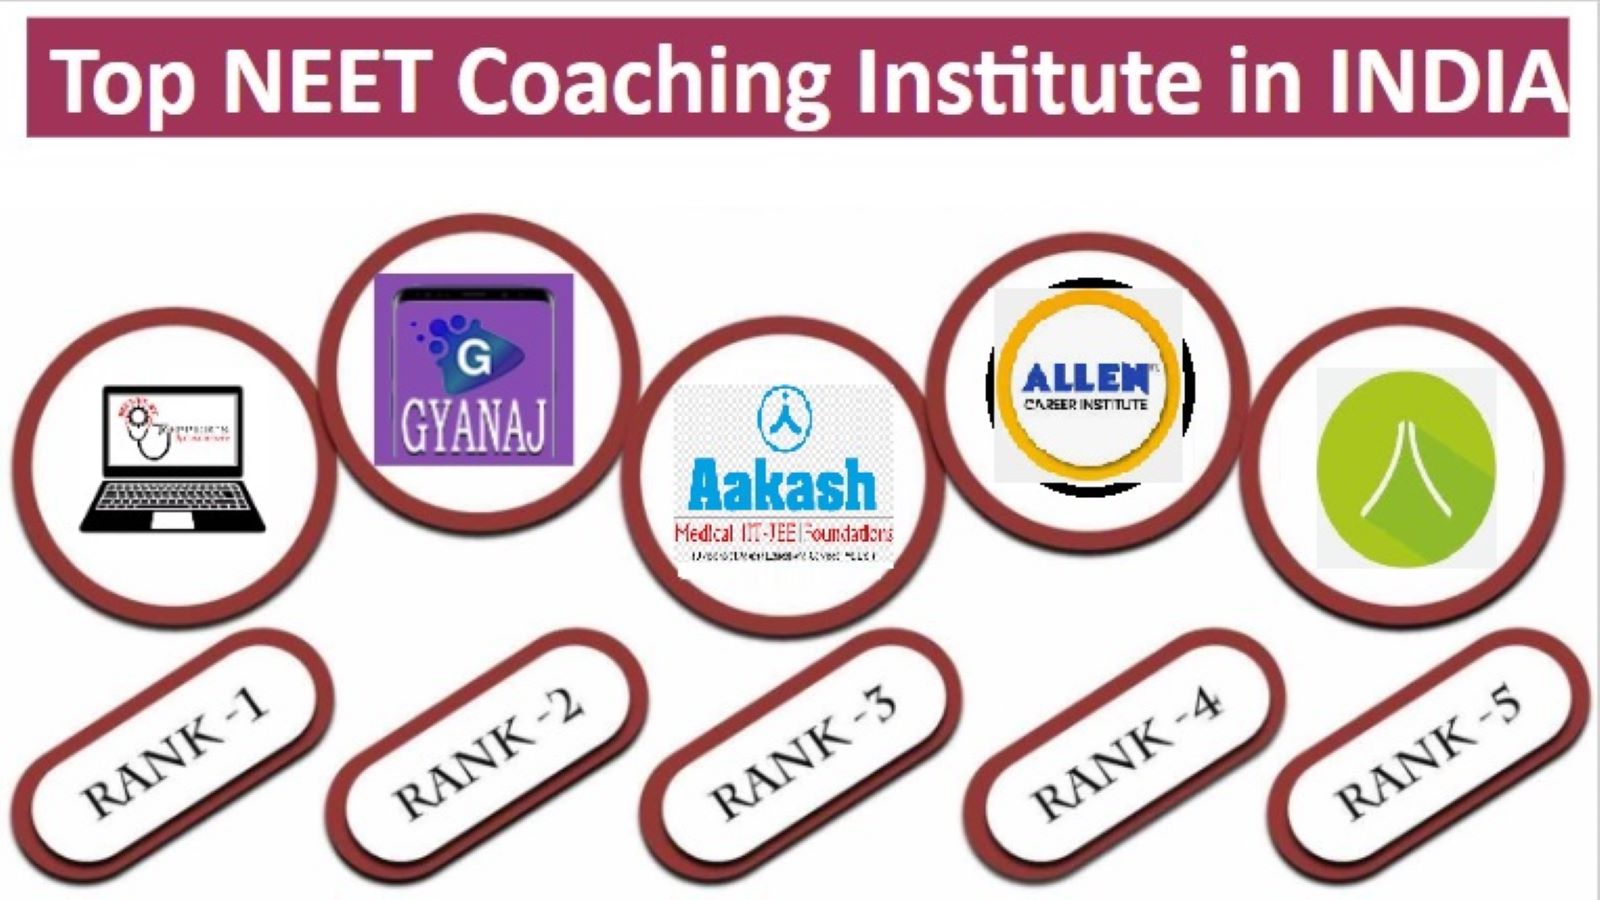 Top 10 NEET coaching institutes in India